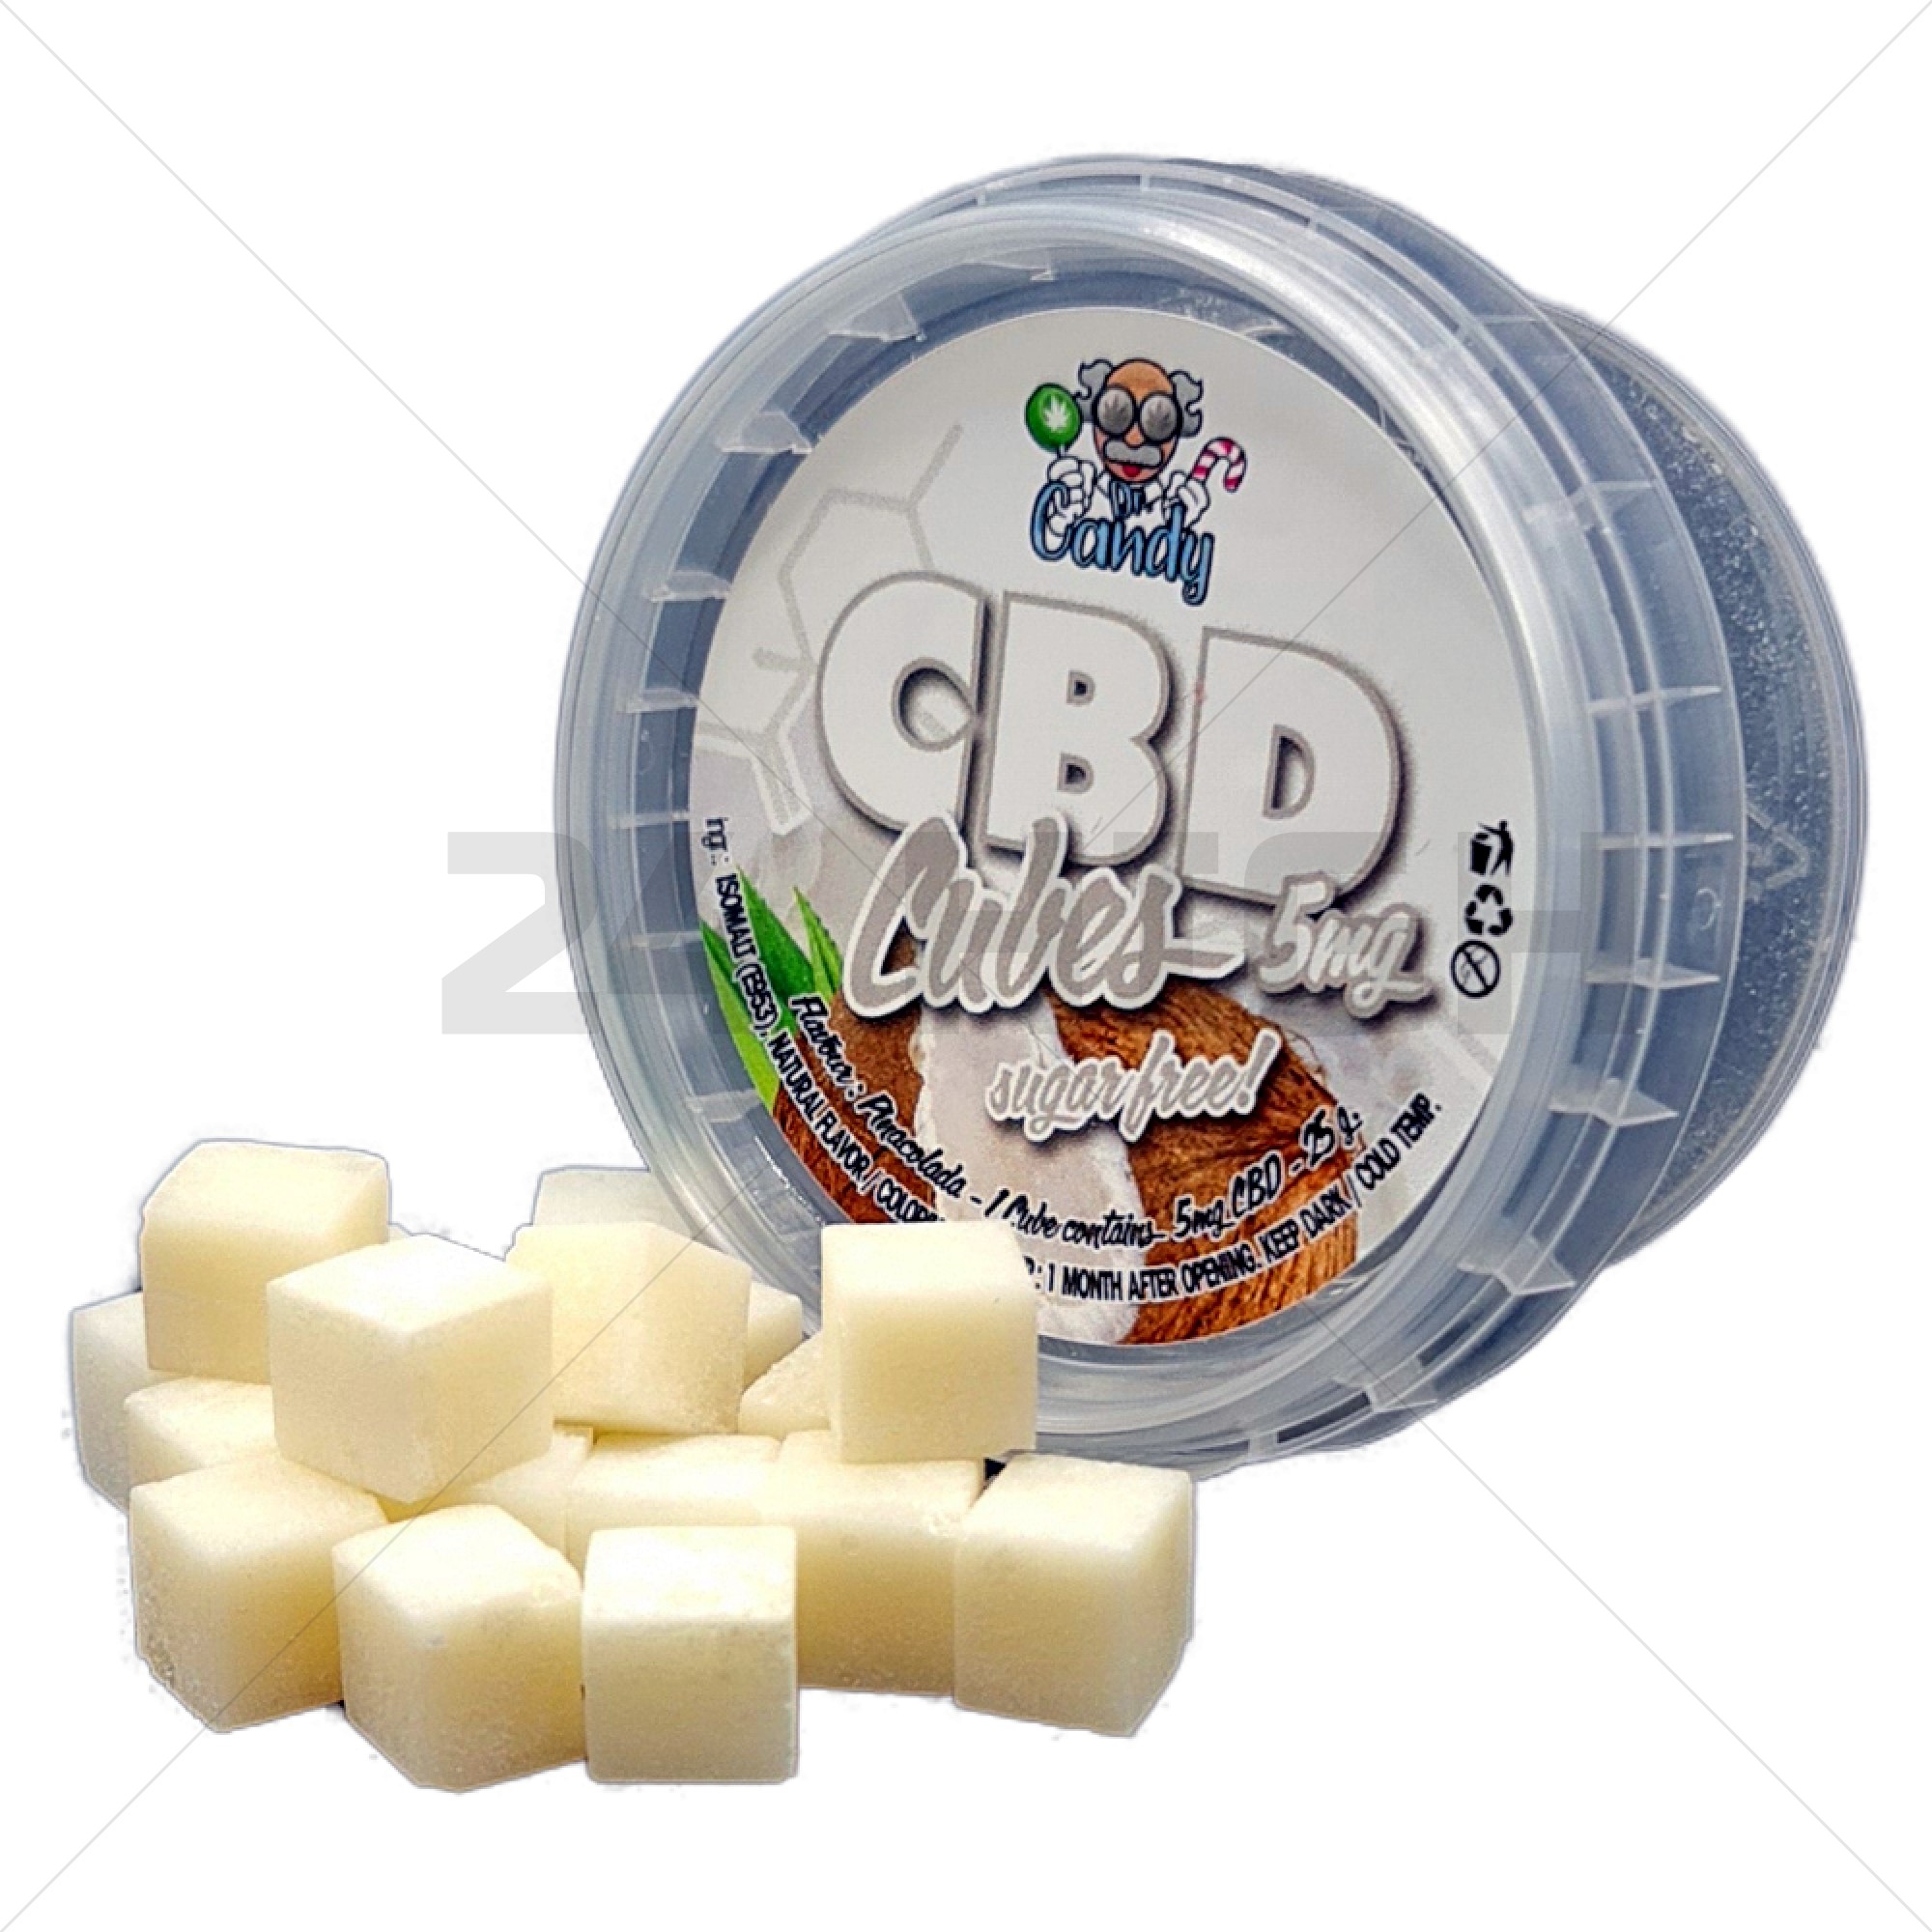 CBD Cubes - Pina Colada